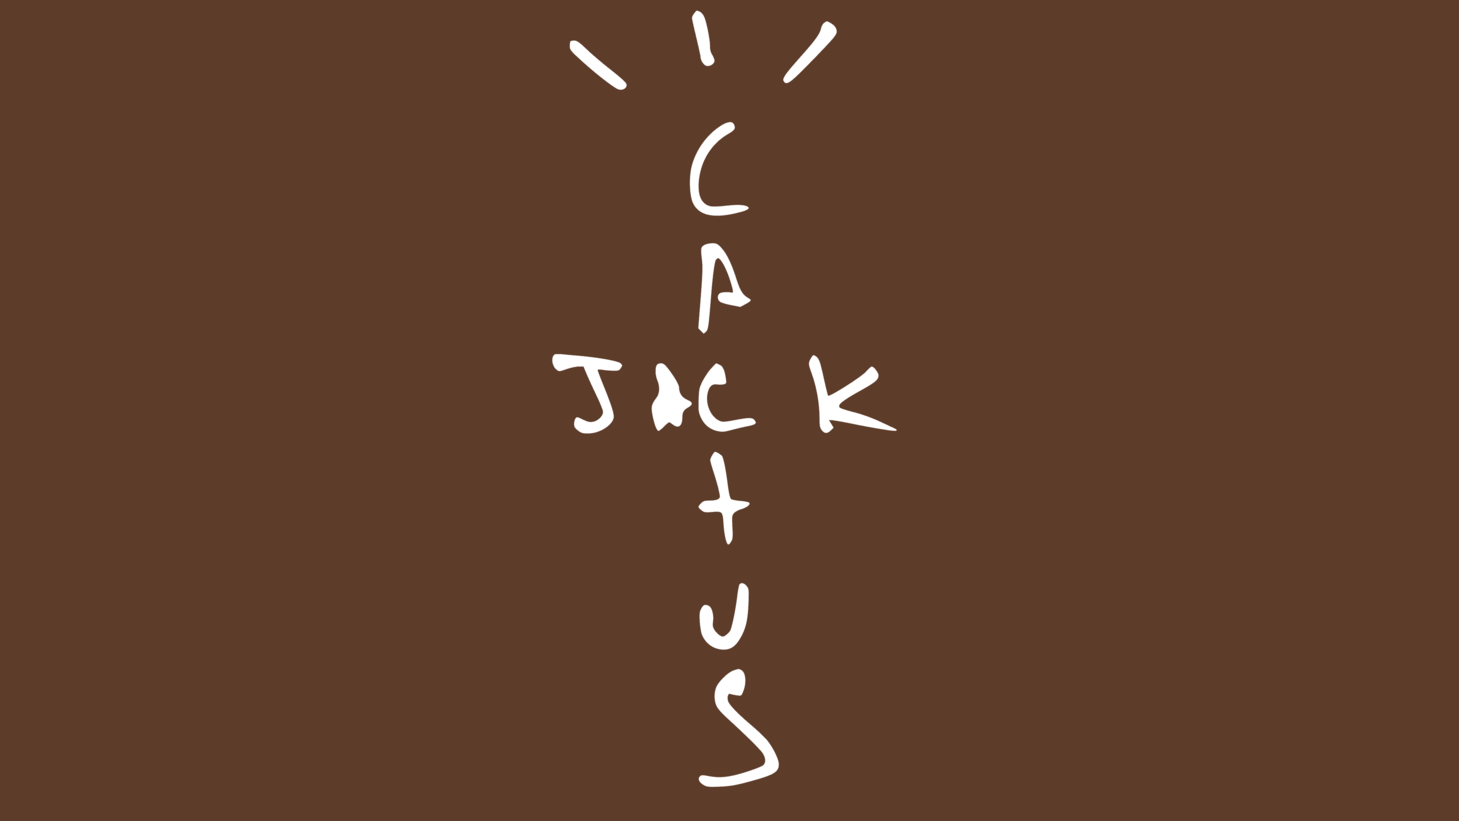 Cactus jack symbol